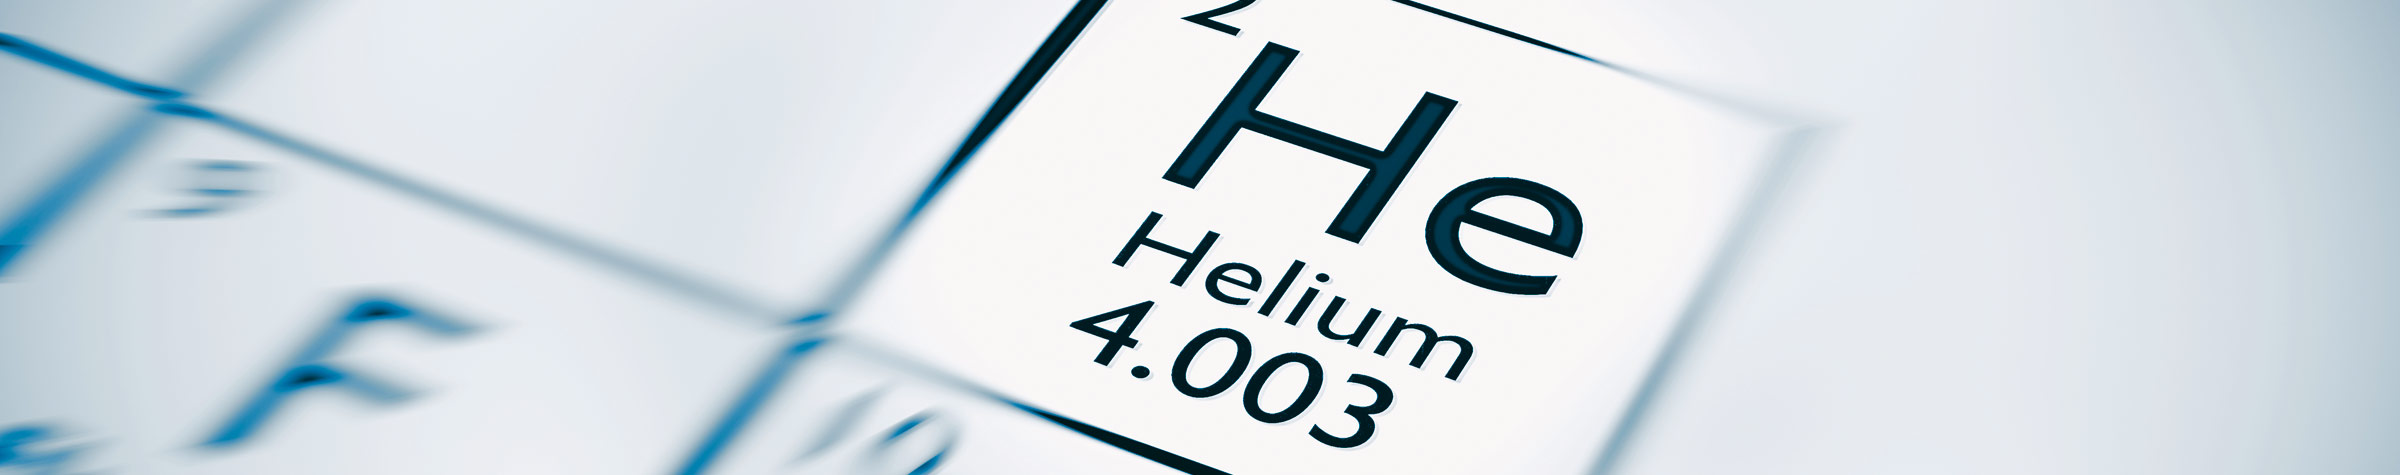 Heliumverdichter